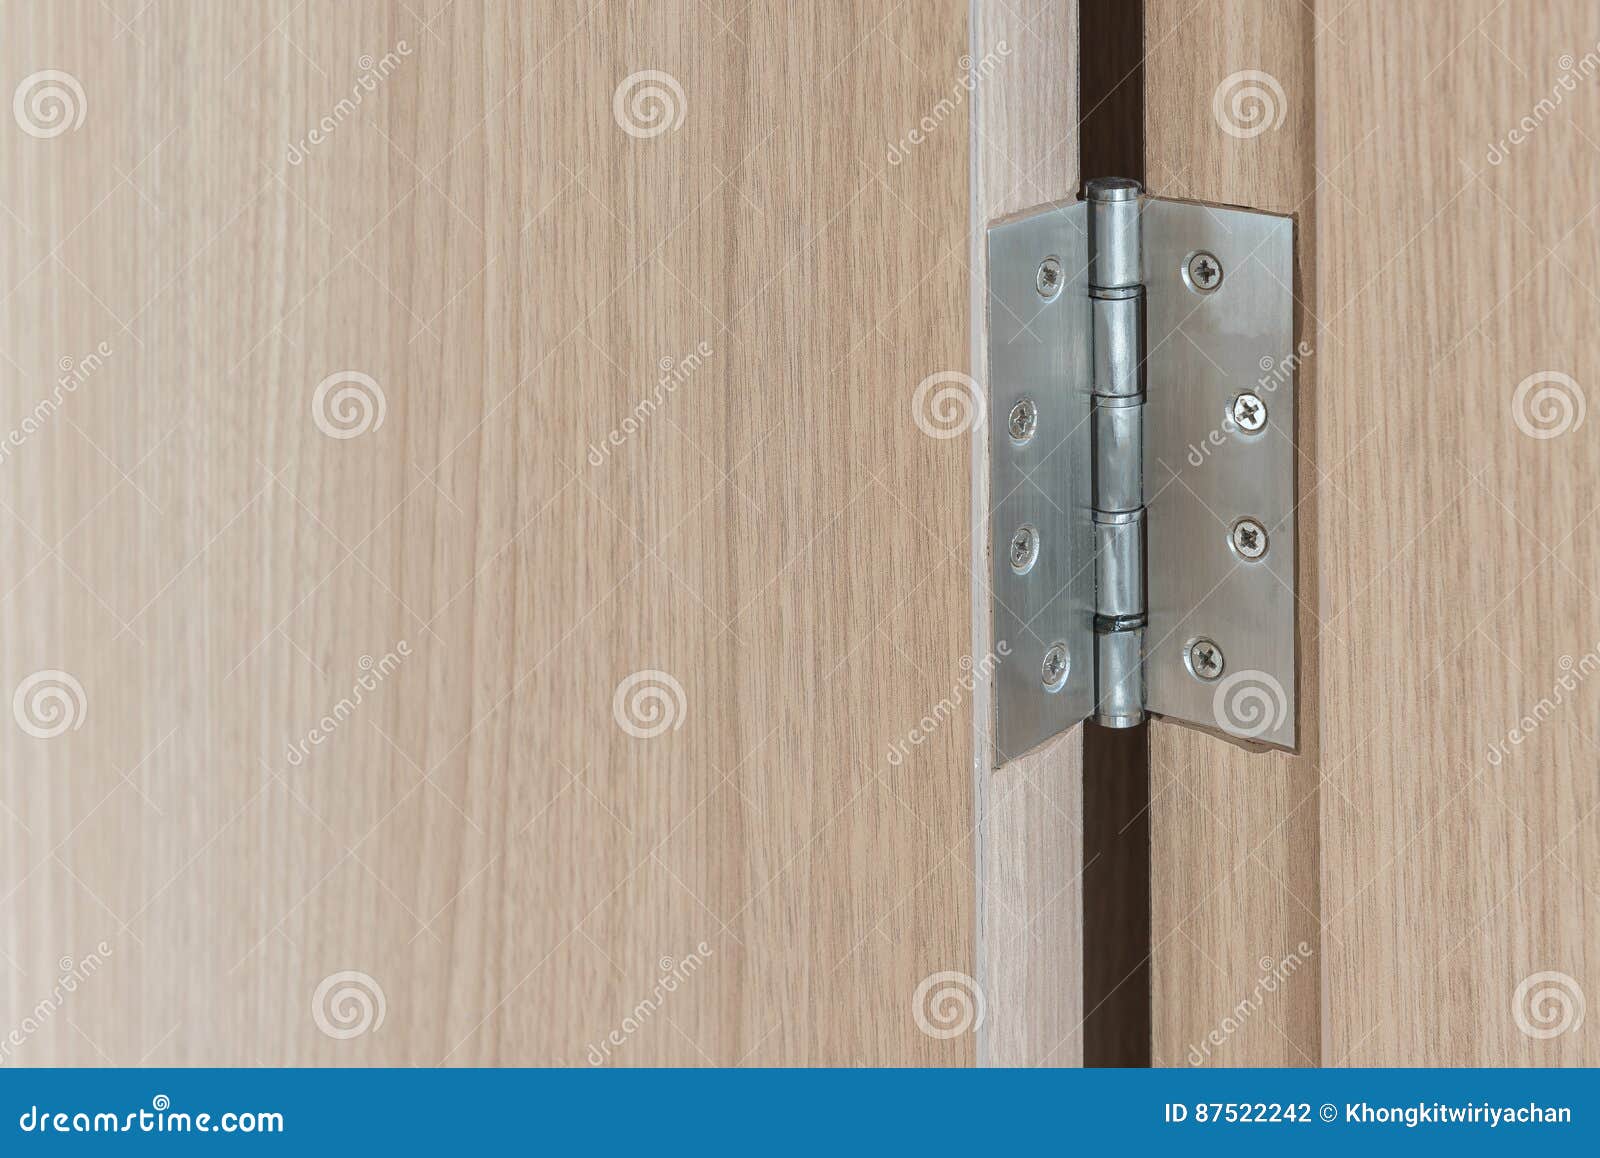 Stainless Door Hinges On Wooden Swing Door Stock Photo